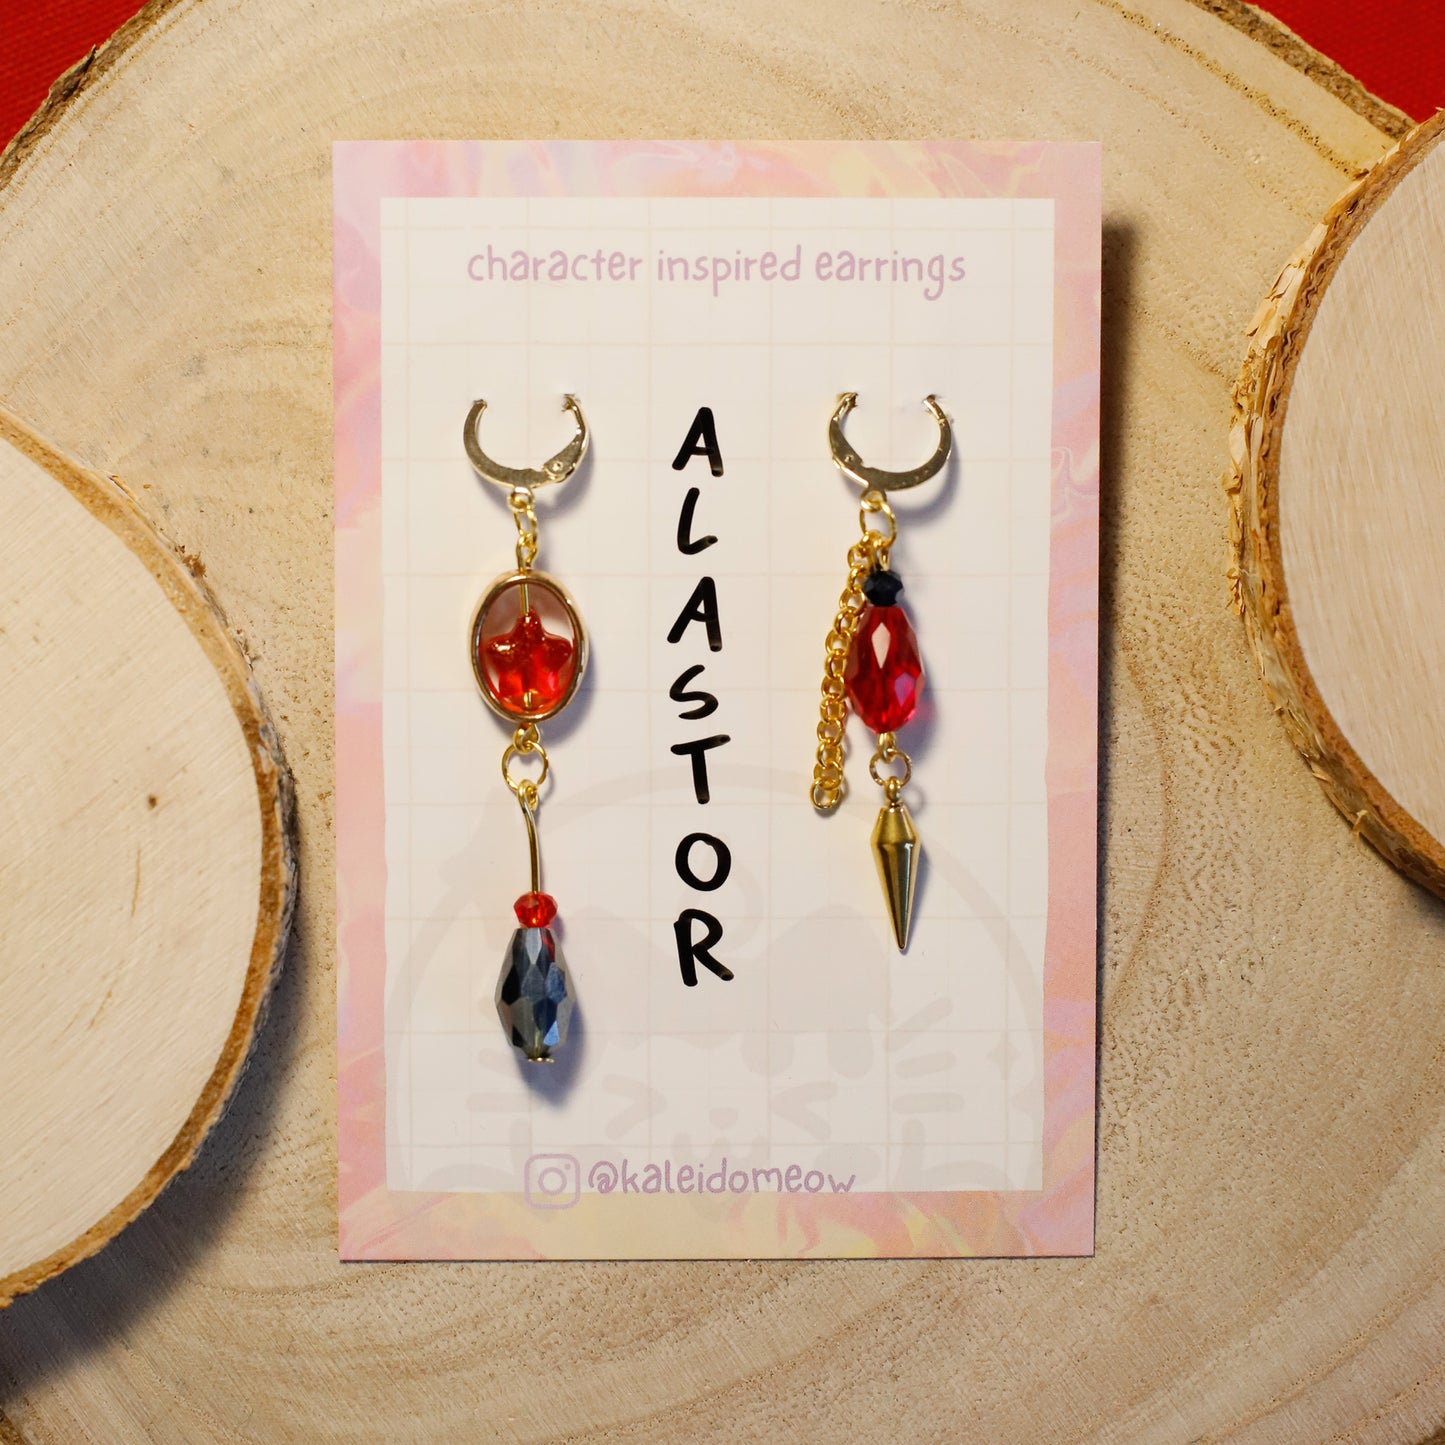 Alastor Hazbin Hotel inspired earrings l anime jewelry